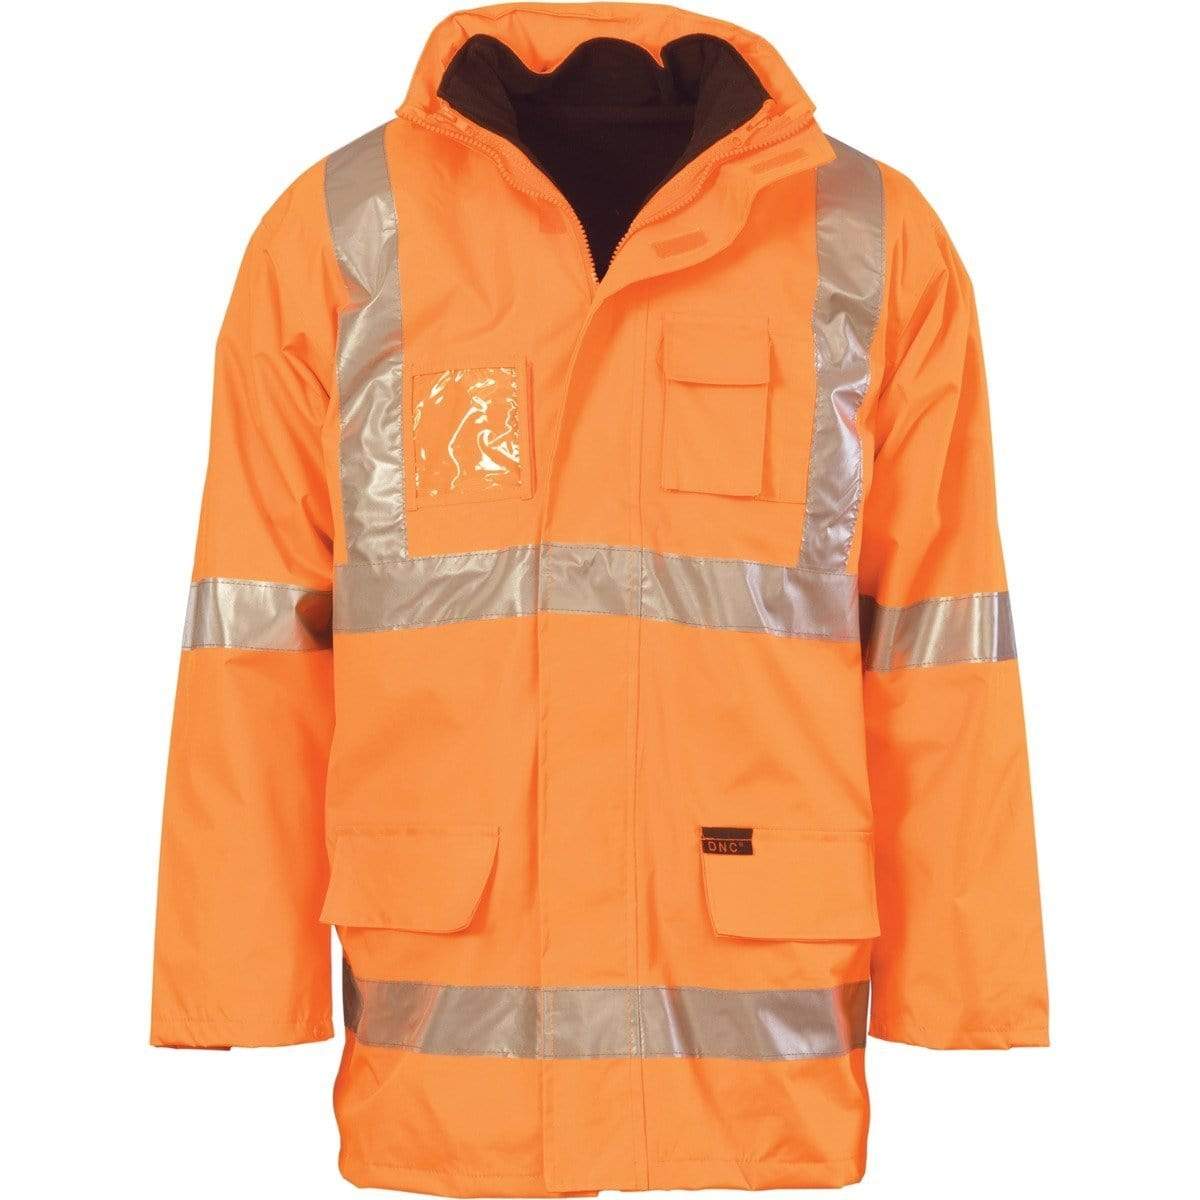 Dnc Workwear Hi-vis Cross Back D/n 6-in-1 Jacke  - 3997 Work Wear DNC Workwear Orange XS 